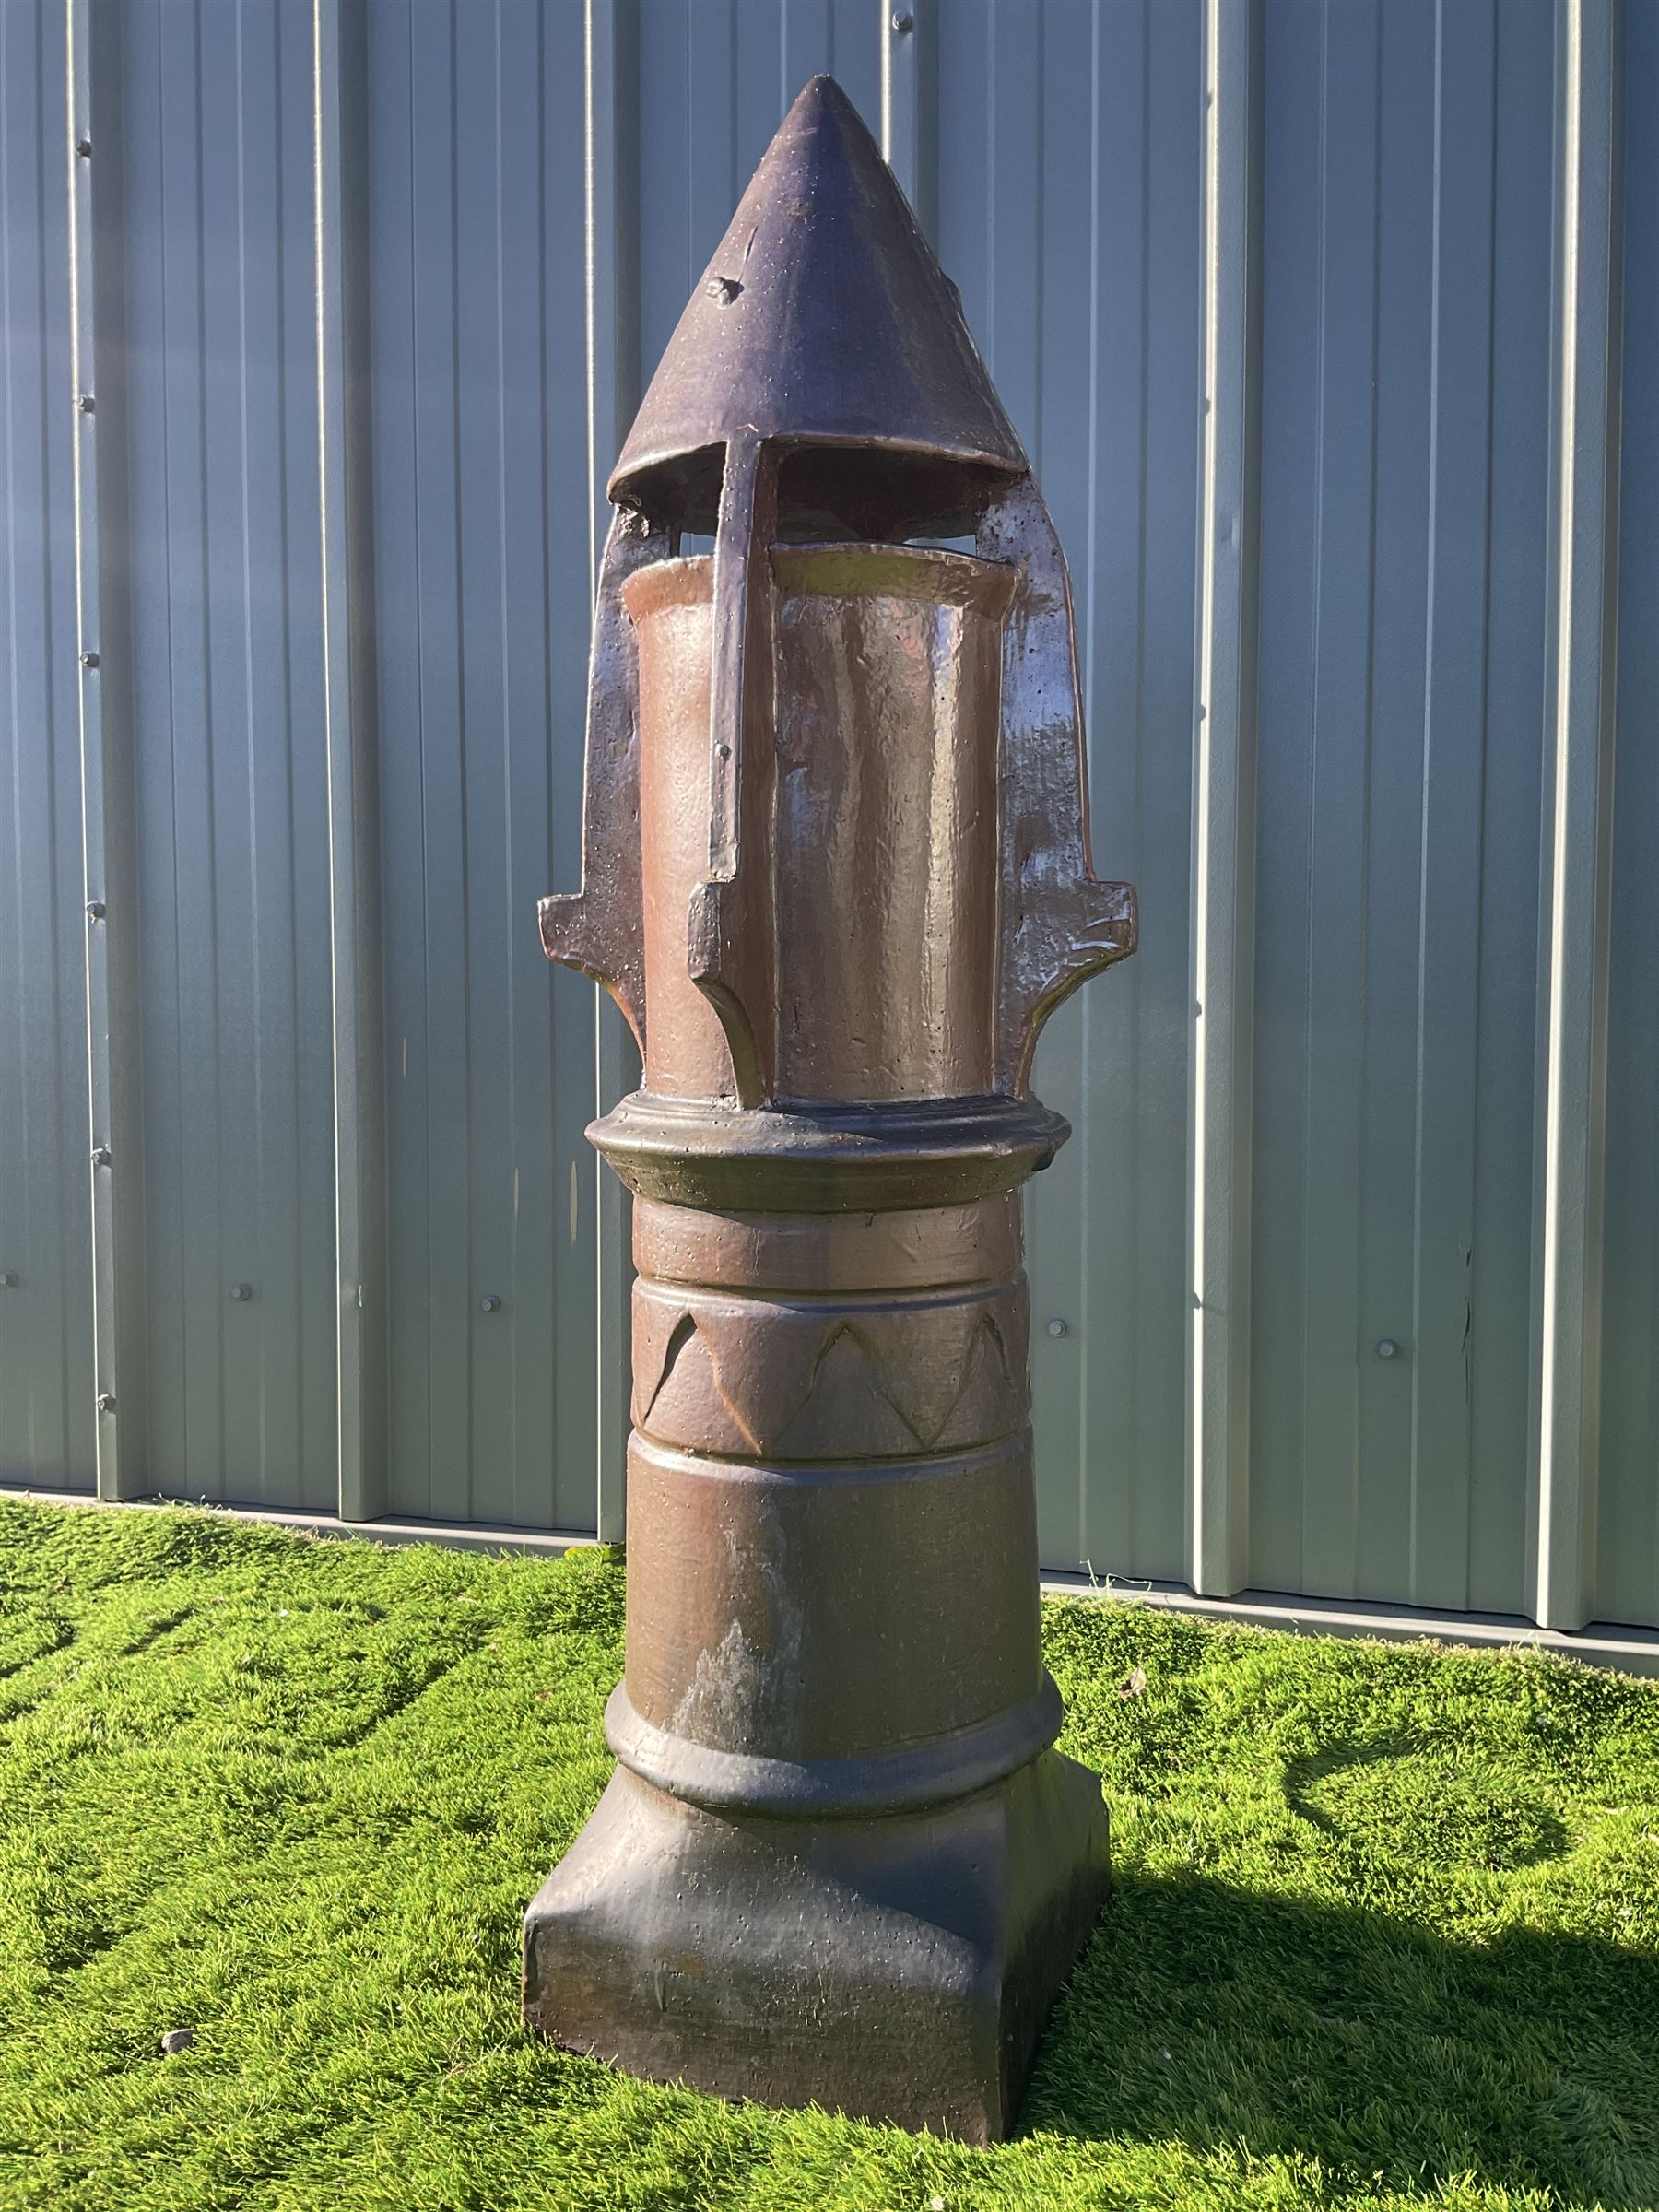 Glazed terracotta rocket shaped chimney pot